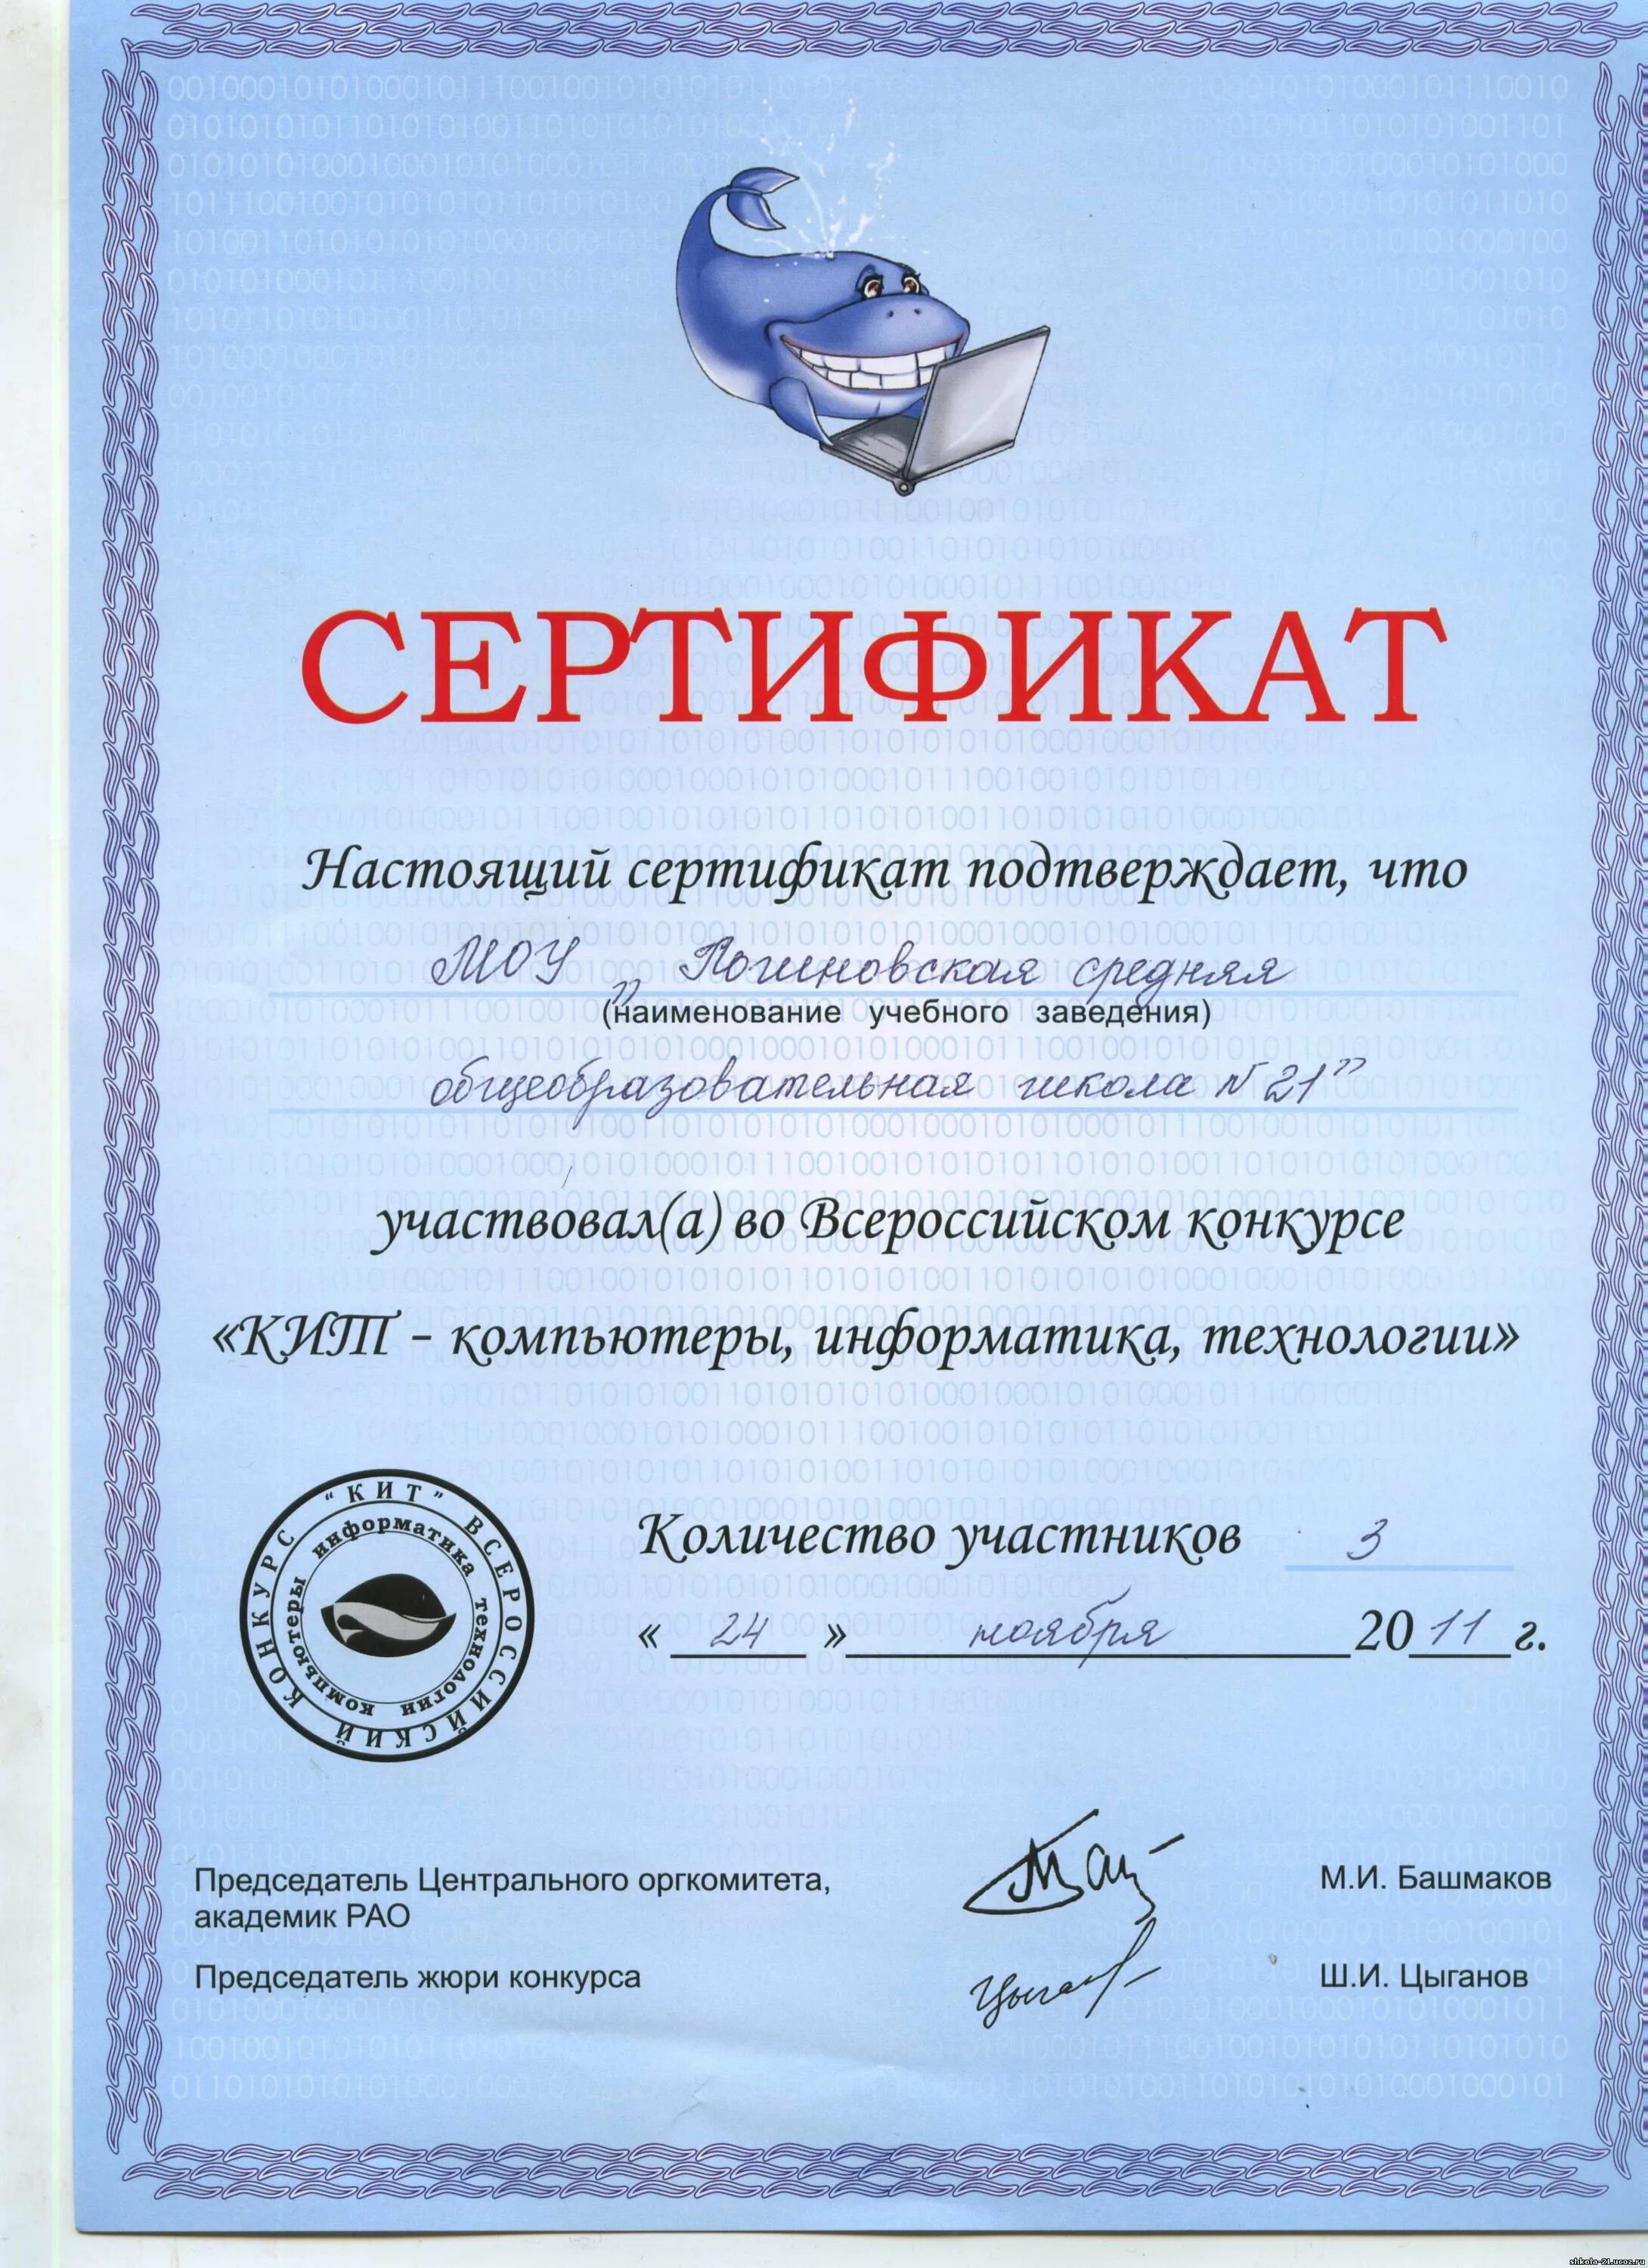 Всероссийский конкурс сертификат. Сертификат кит. Сертификат конкурса кит. Кит сертификат участника.